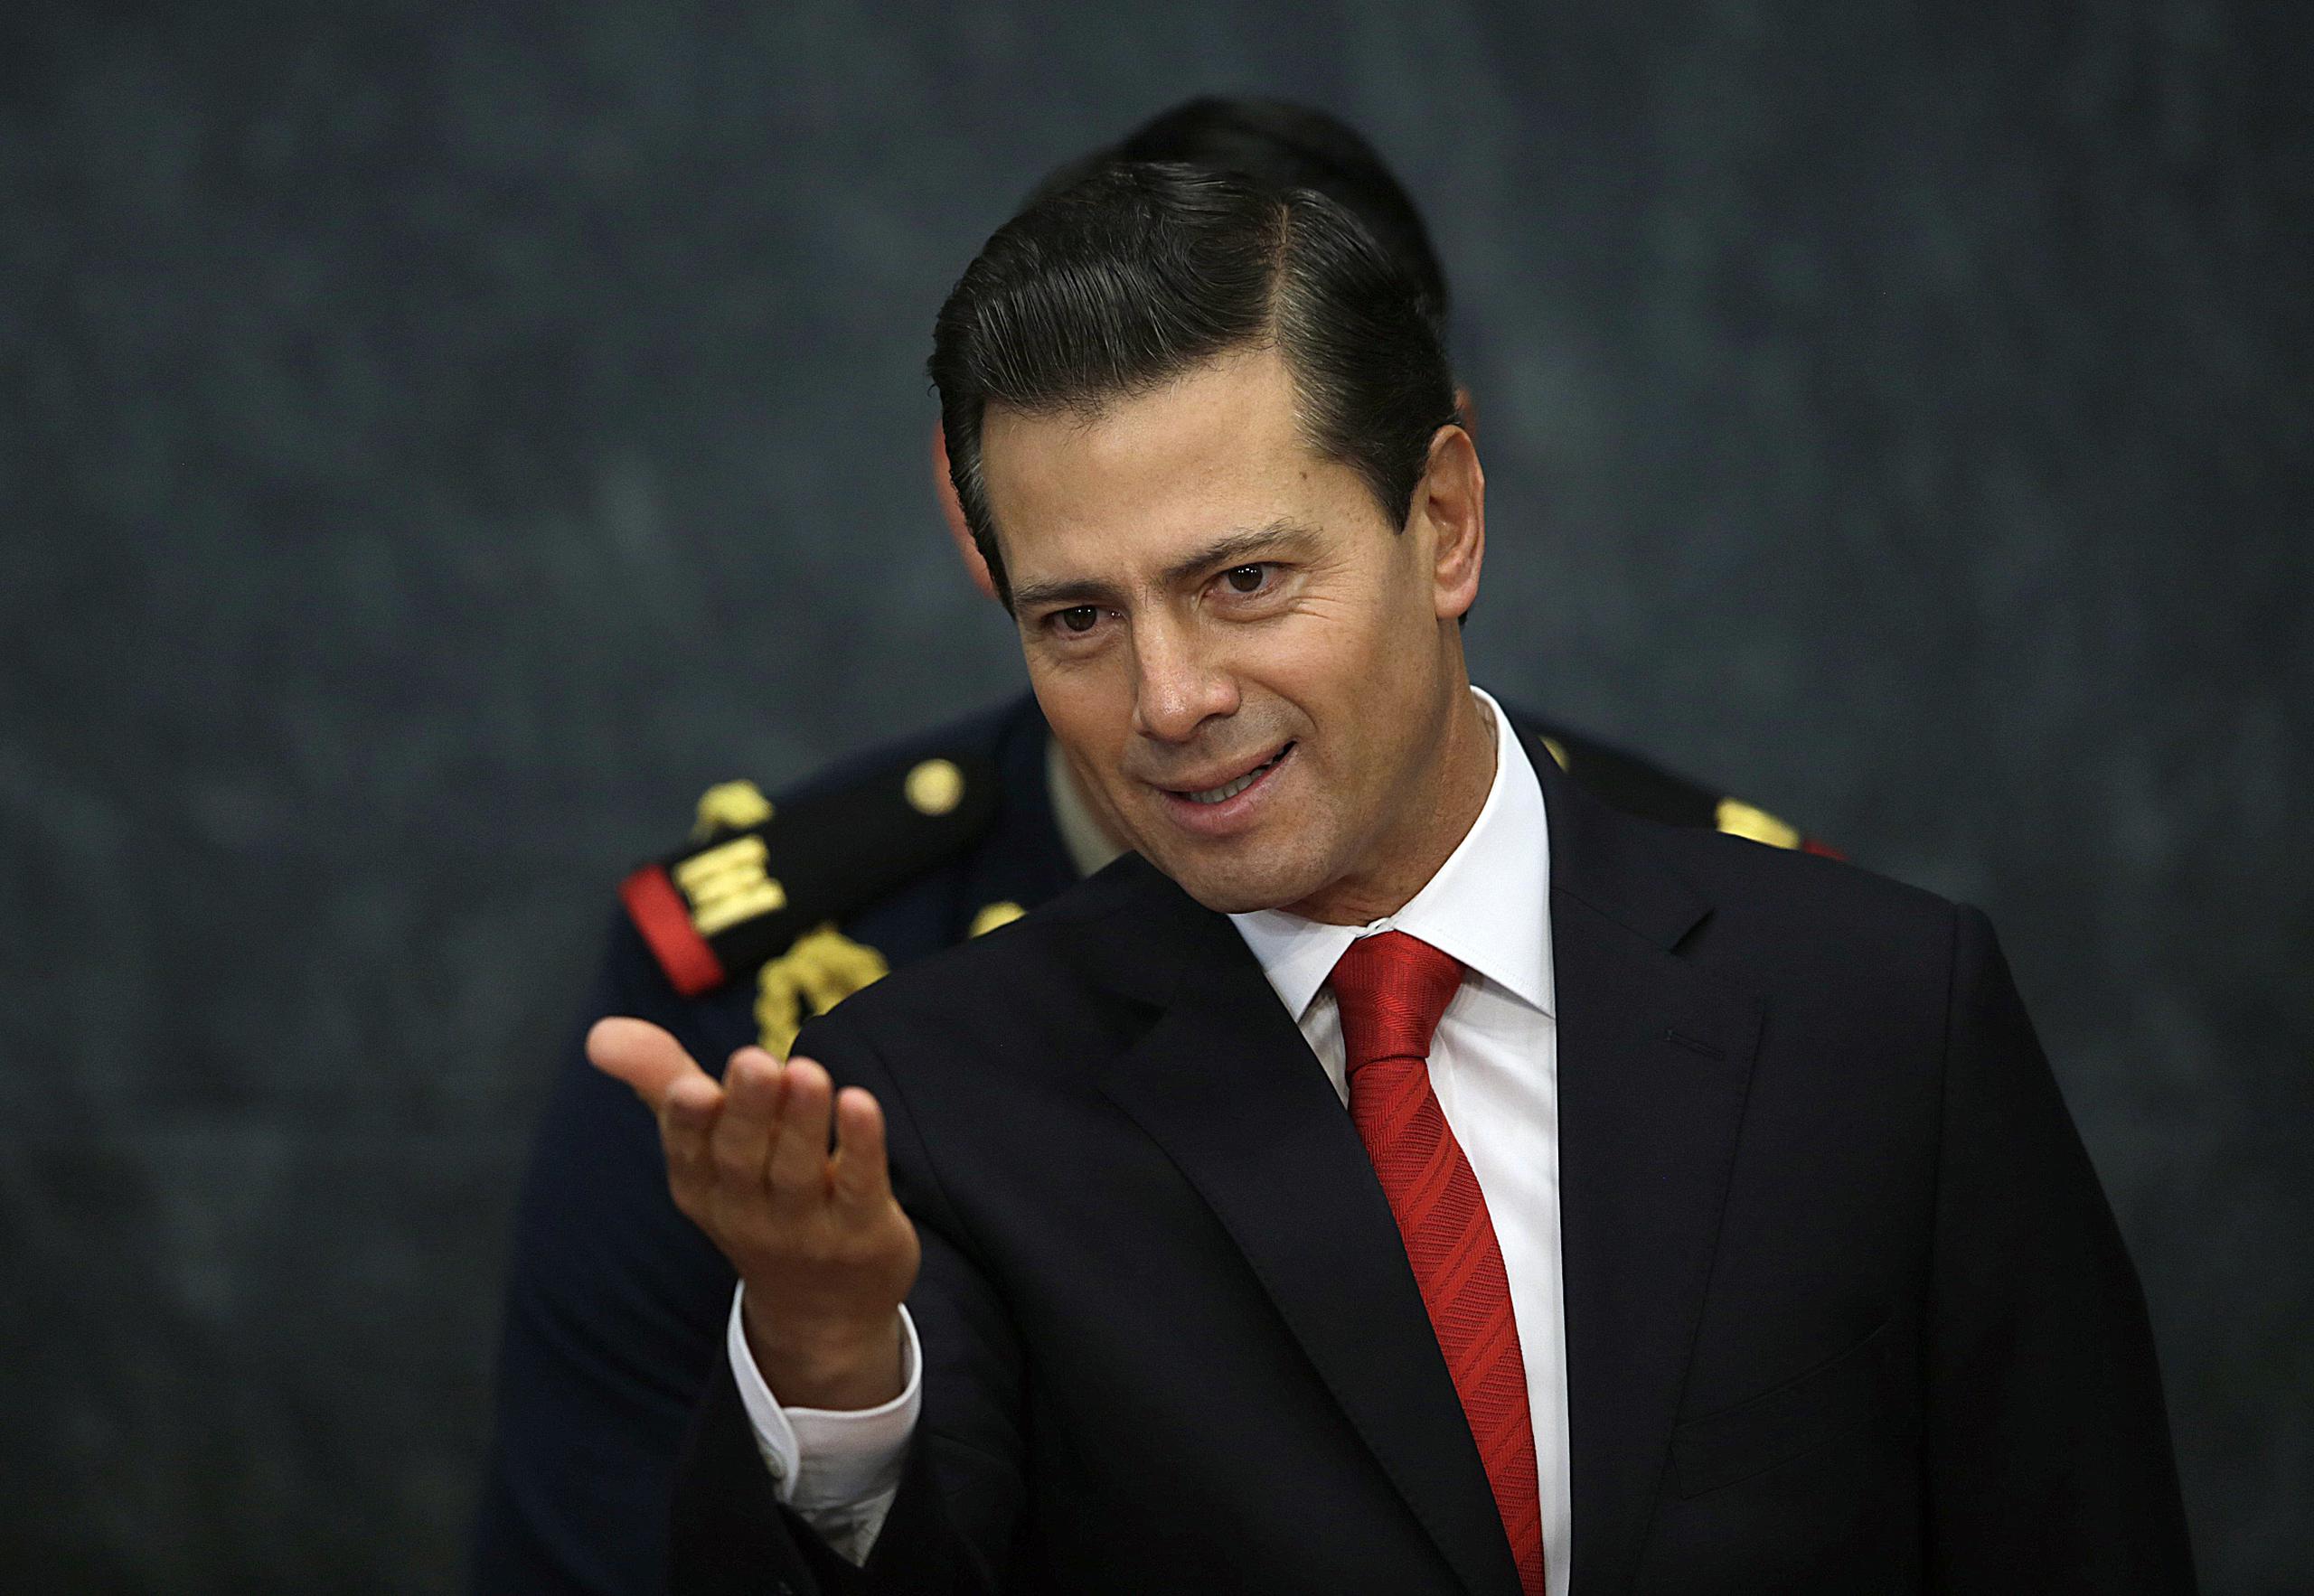 La denuncia penal presentada contra Peña Nieto por la Unidad de Inteligencia Financiera no significa que los fiscales hayan decidido presentar cargos formales.